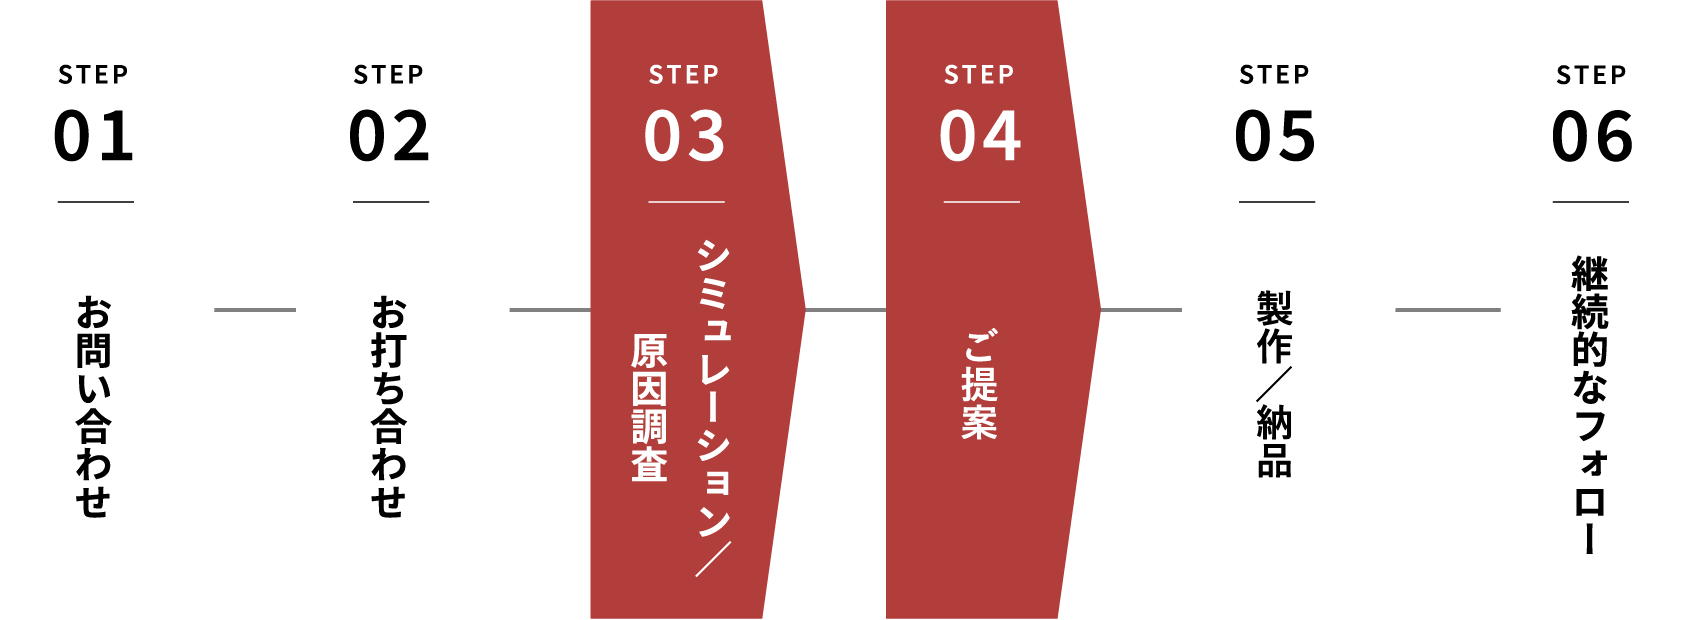 STEP01 お問い合わせ STEP02 お打ち合わせ STEP03 シミュレーション／原因調査 STEP04 ご提案 STEP05 製作／納品 STEP06 継続的なフォロー